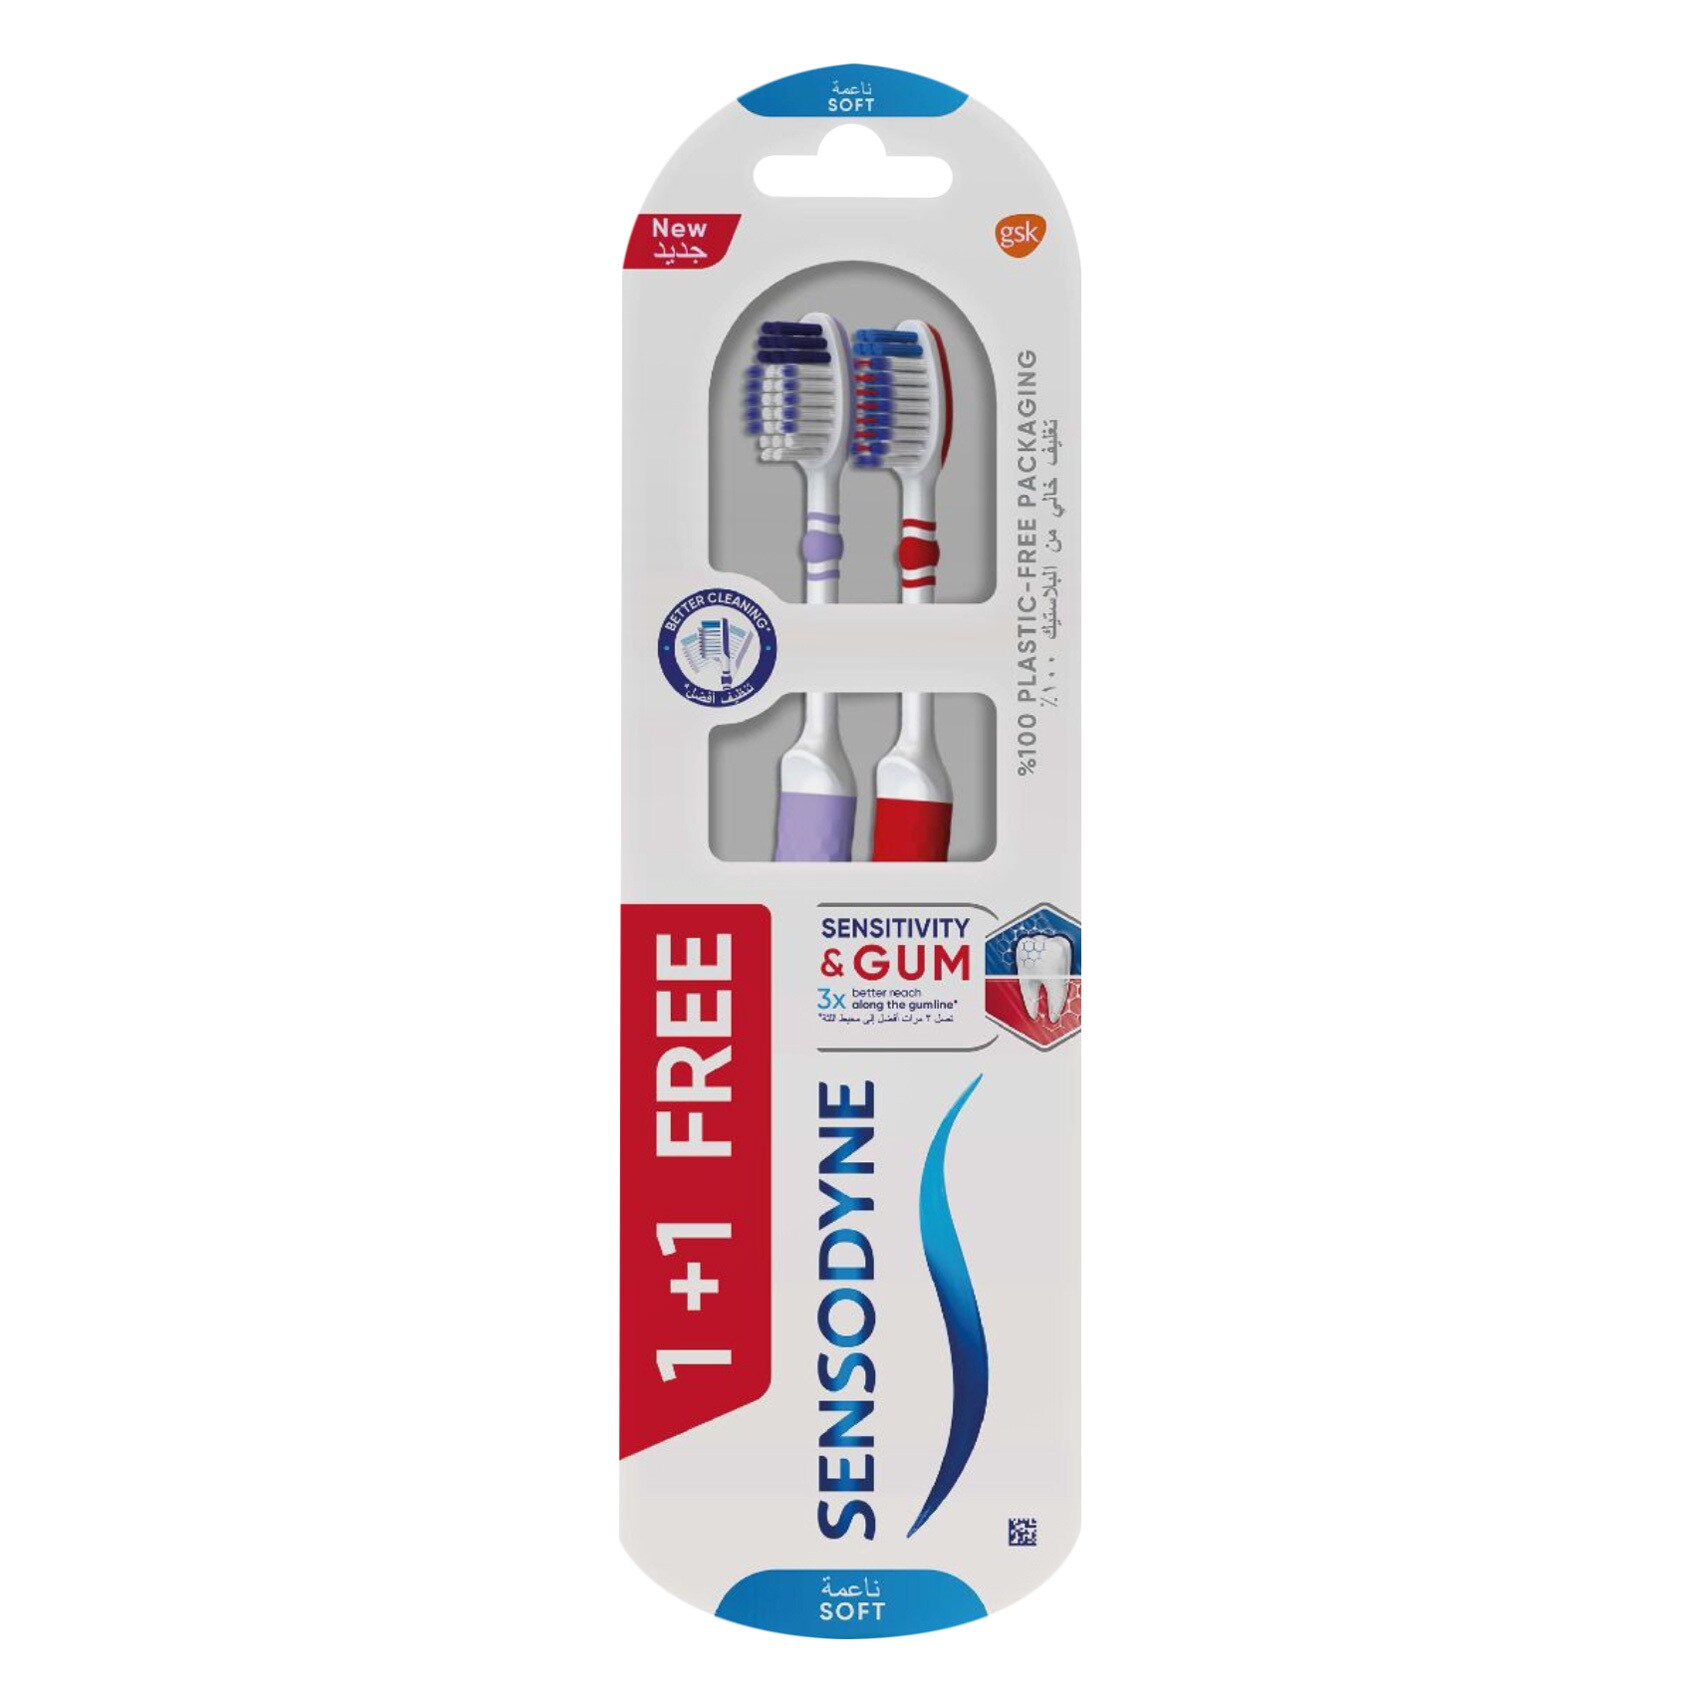 Sensodyne Gum Care Extra Soft Toothbrush